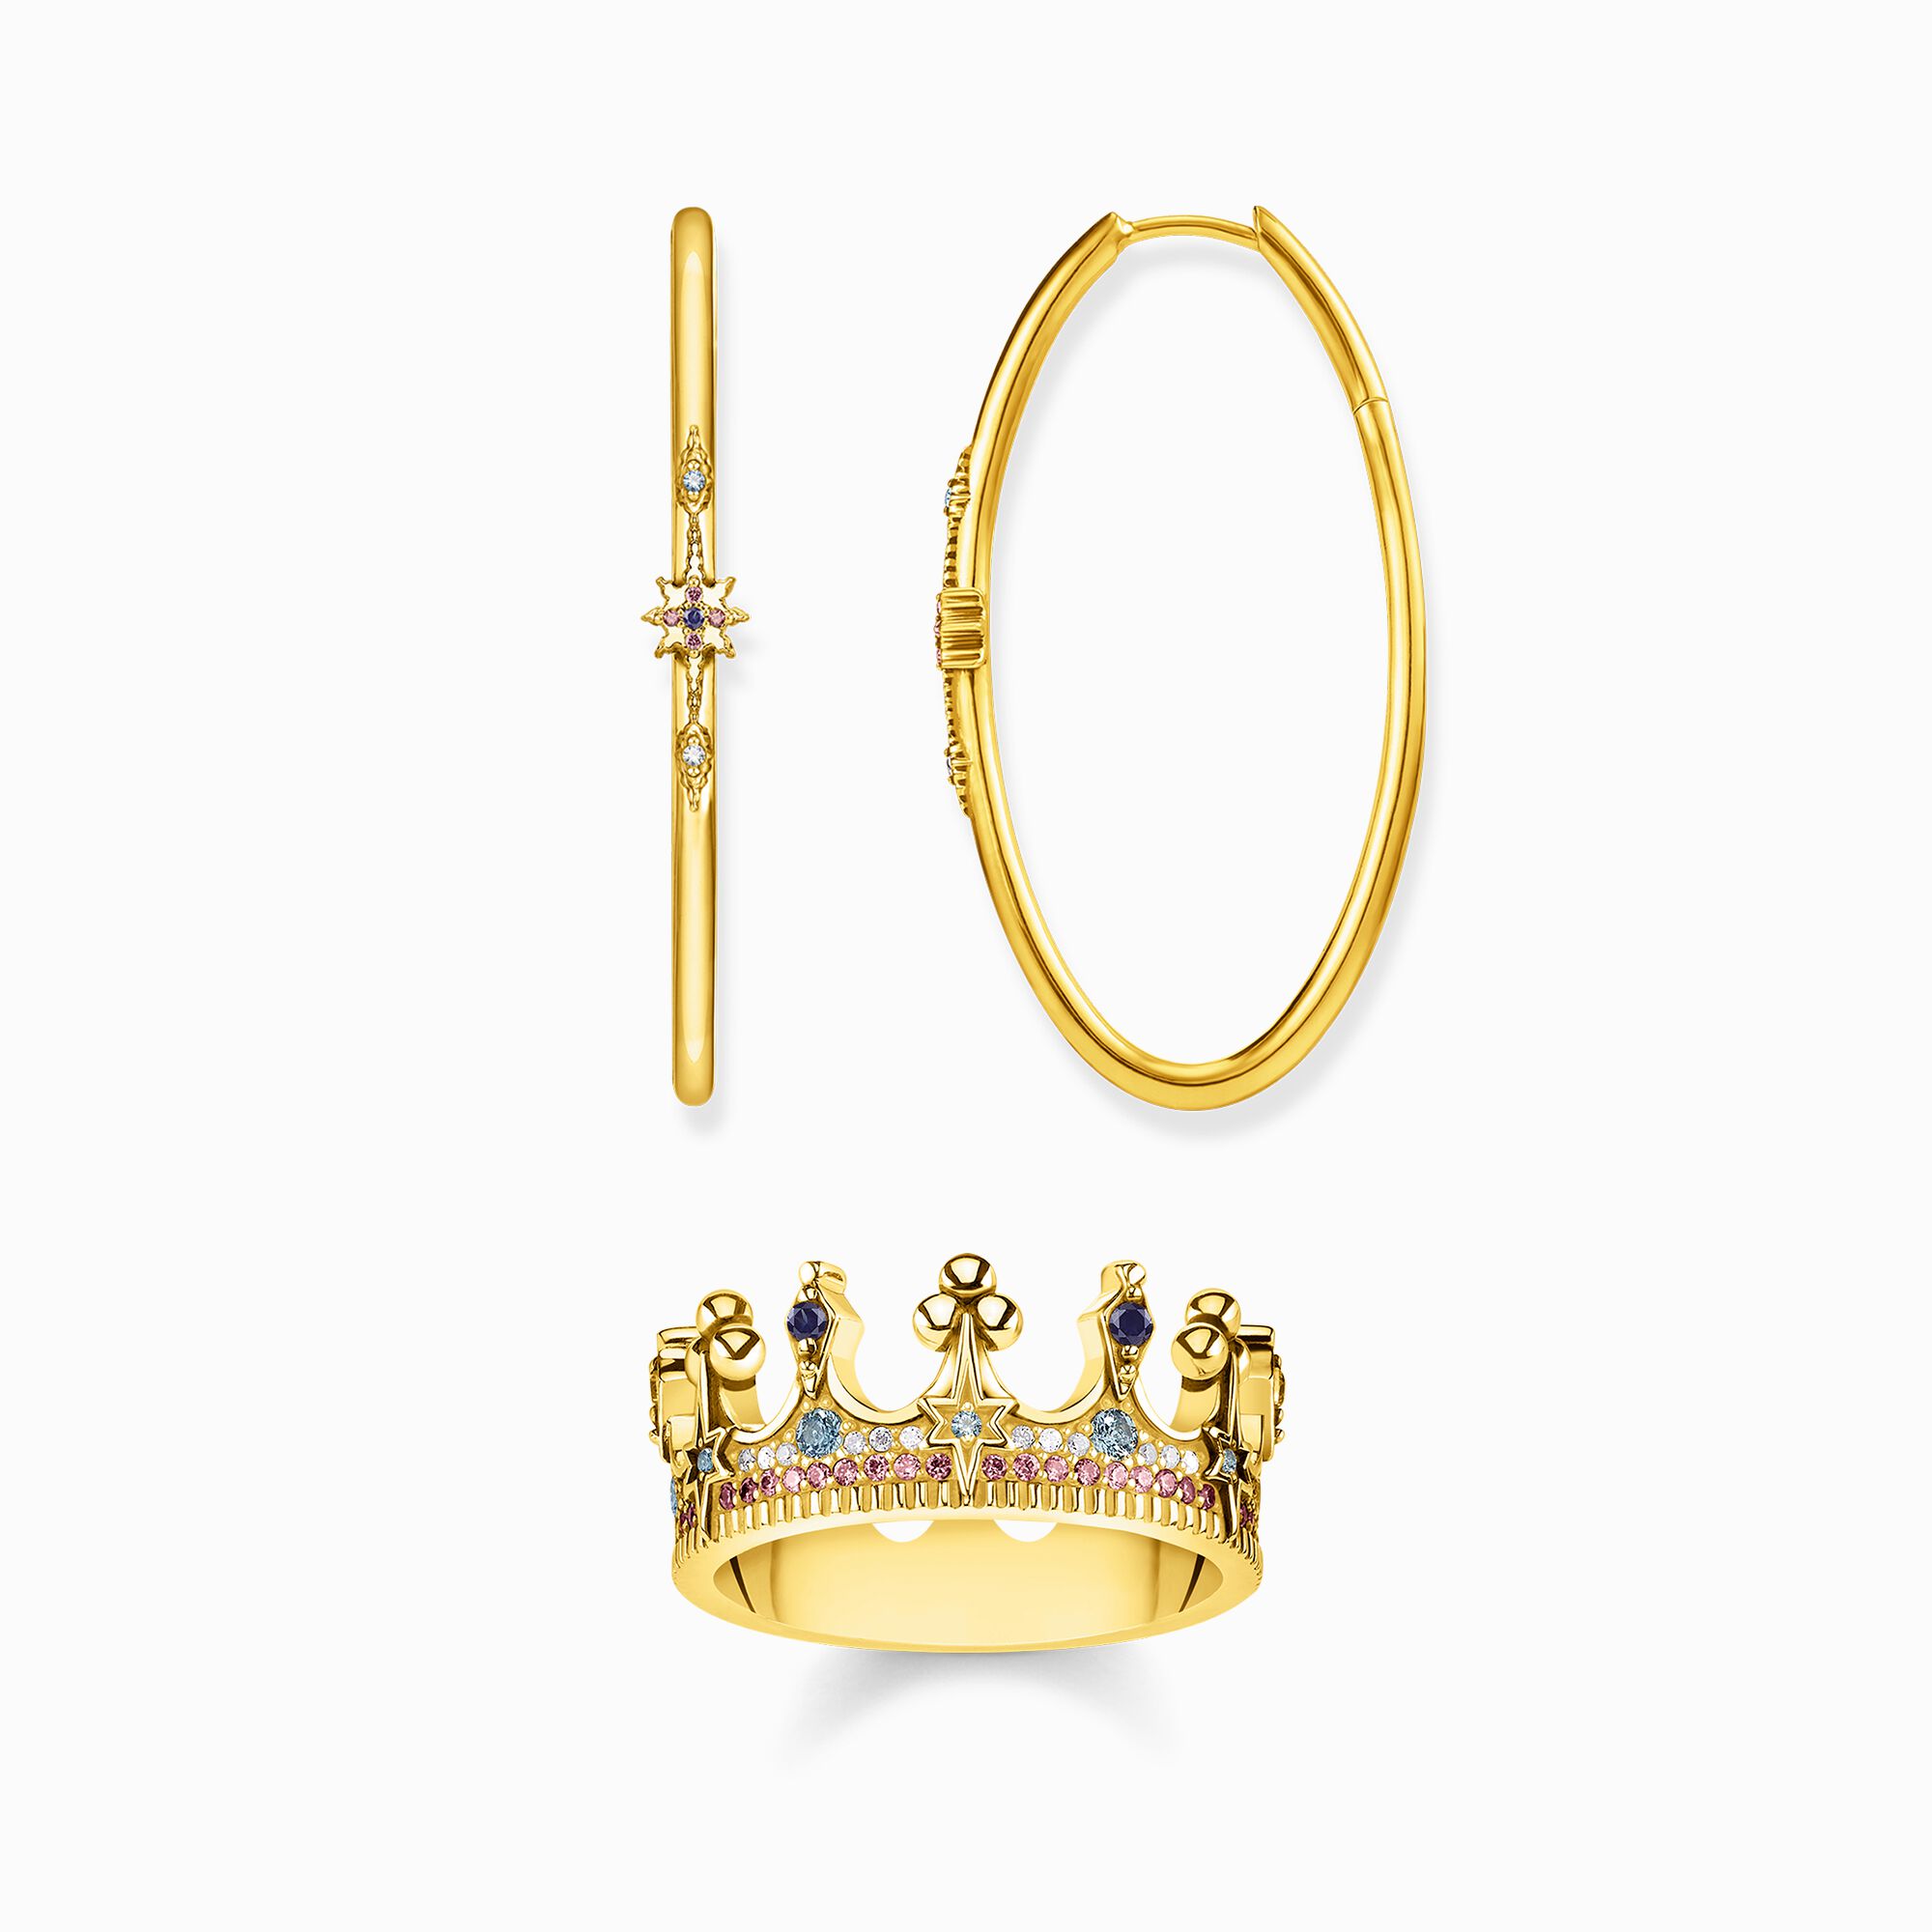 Set Royalty gold aus der  Kollektion im Online Shop von THOMAS SABO